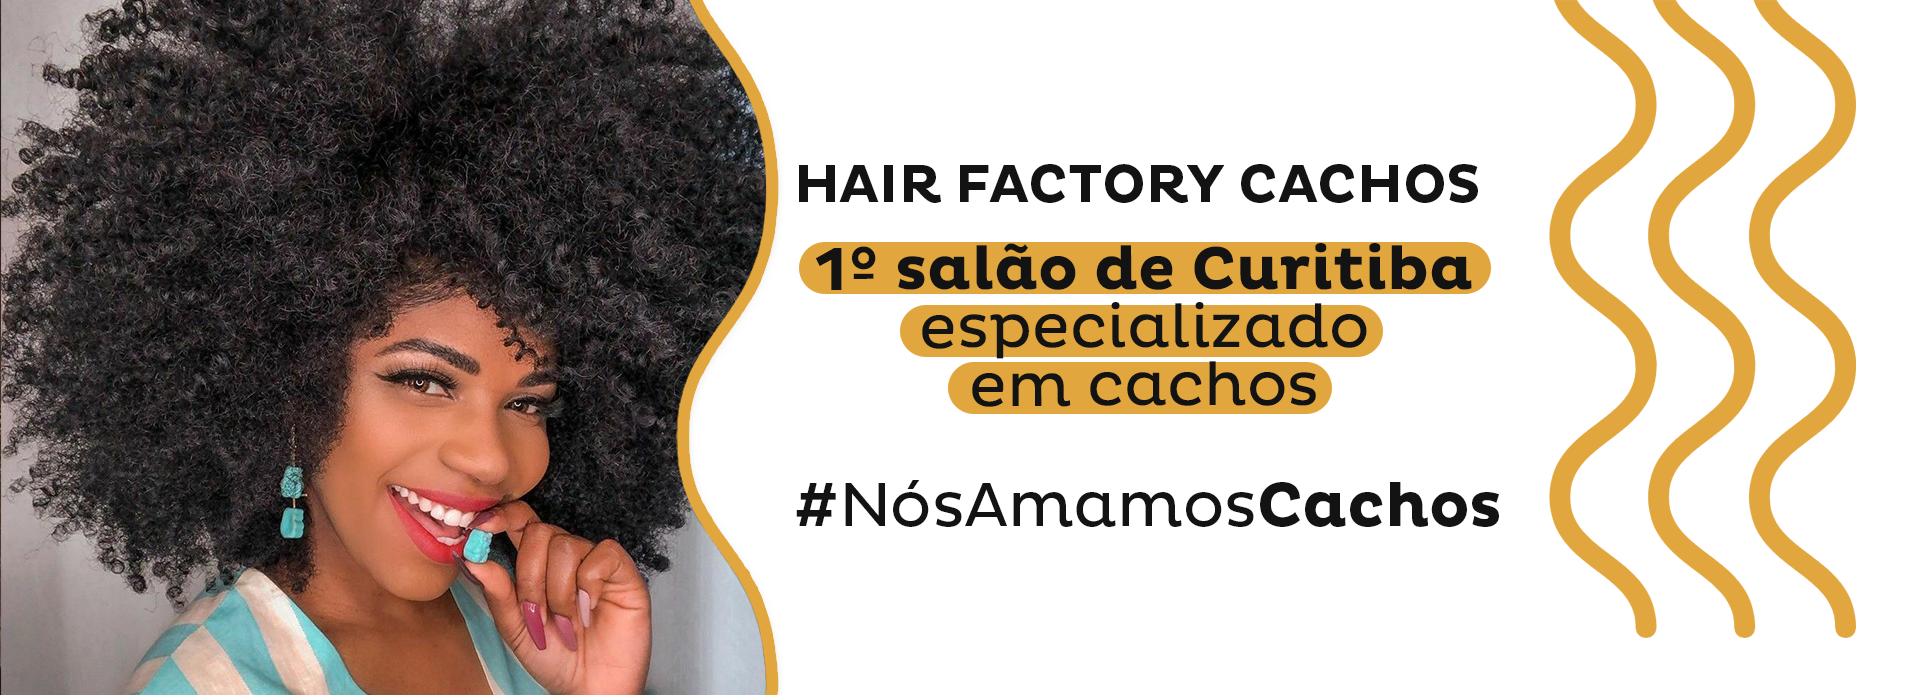 Hair Factory Cachos - Salão especializado em Cabelos Cacheados